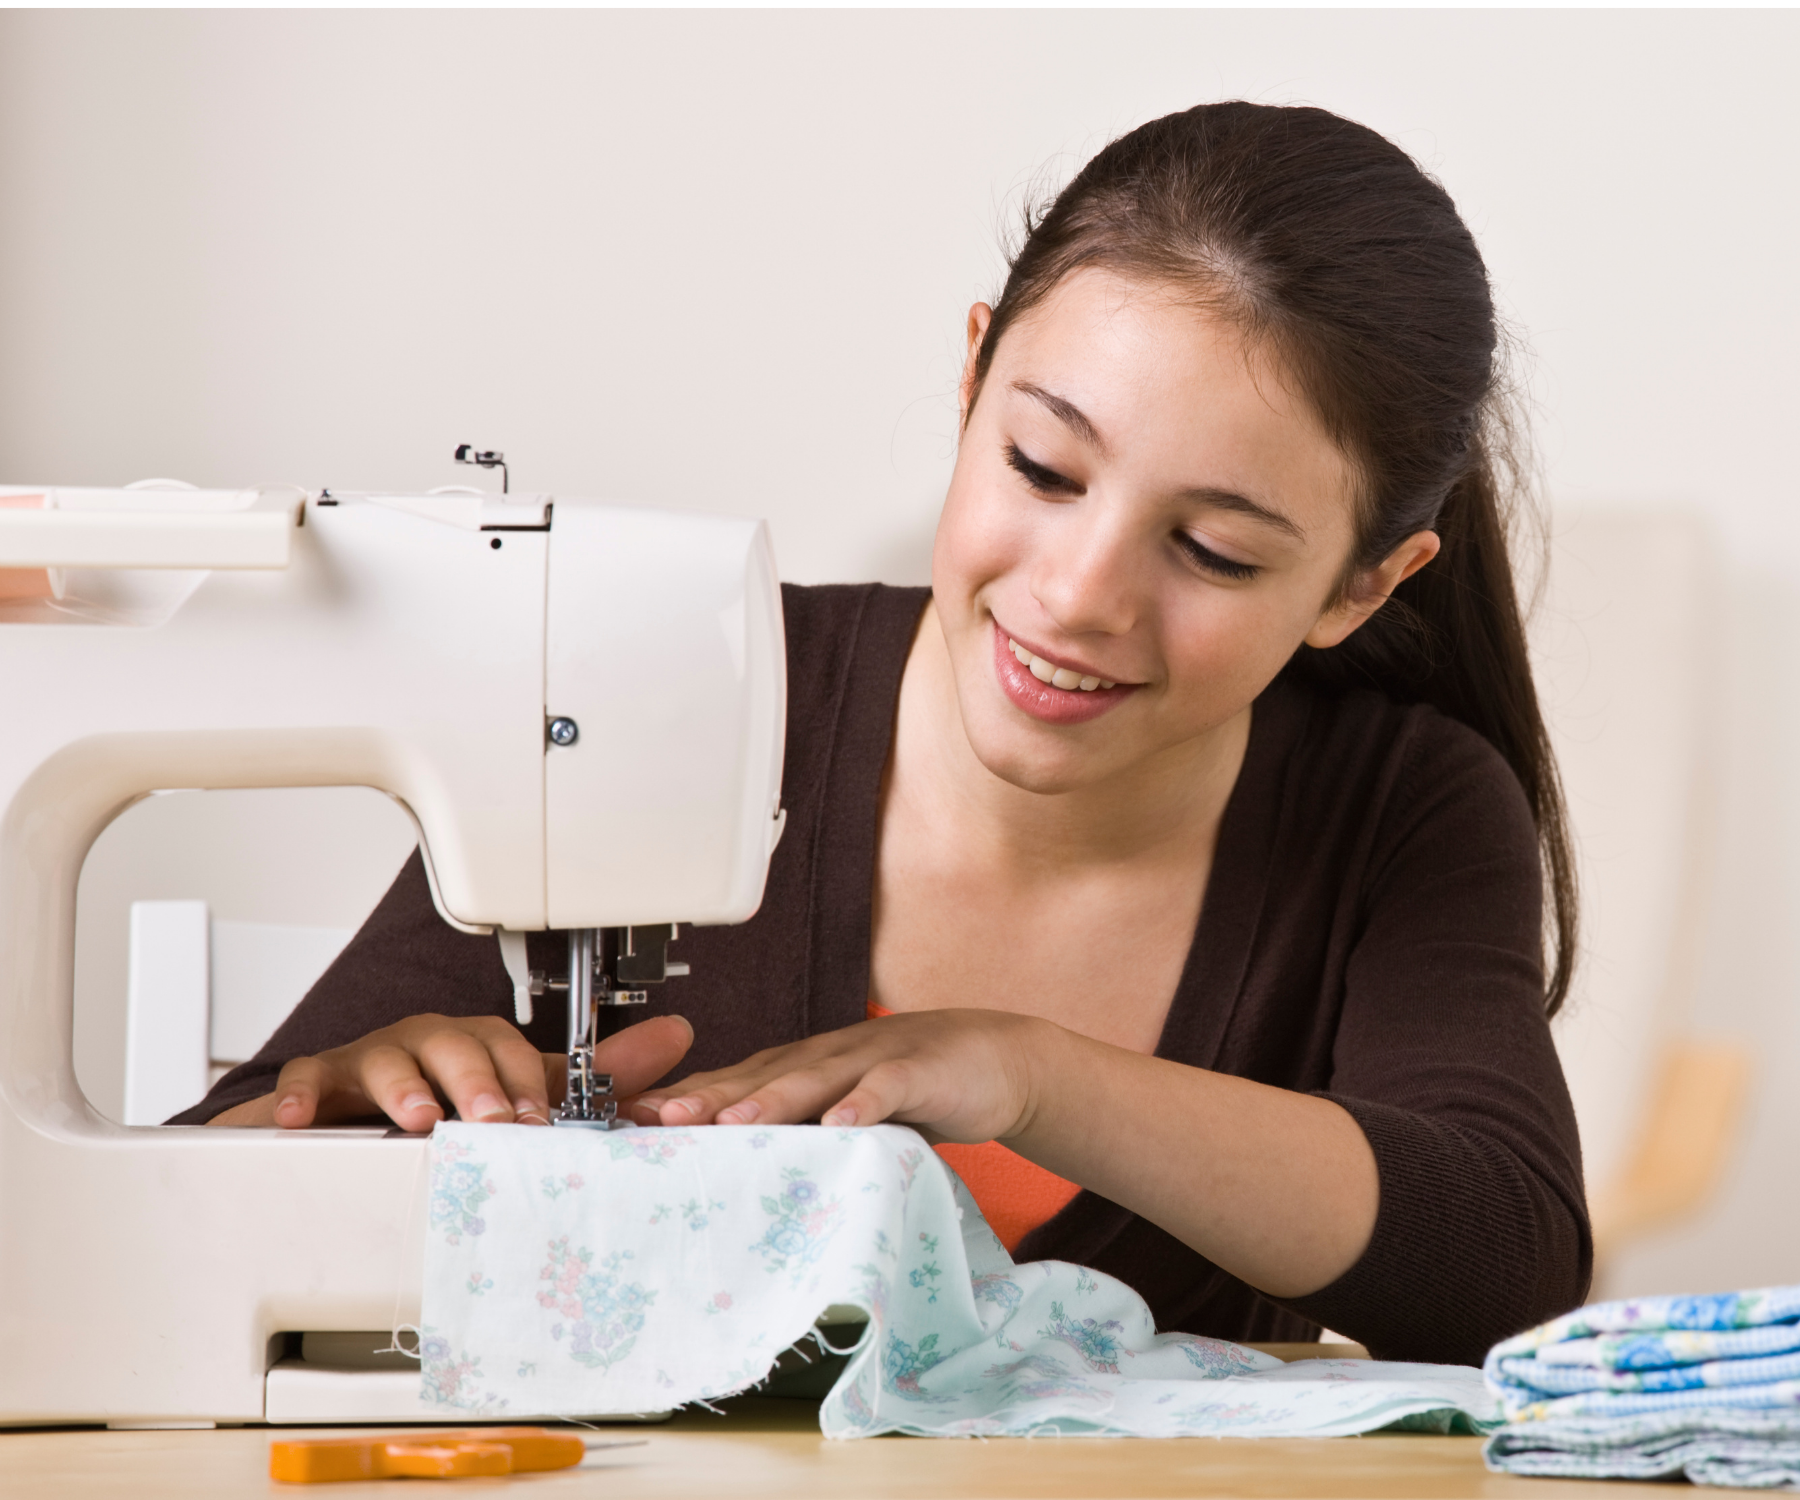 Teen Sewing Class